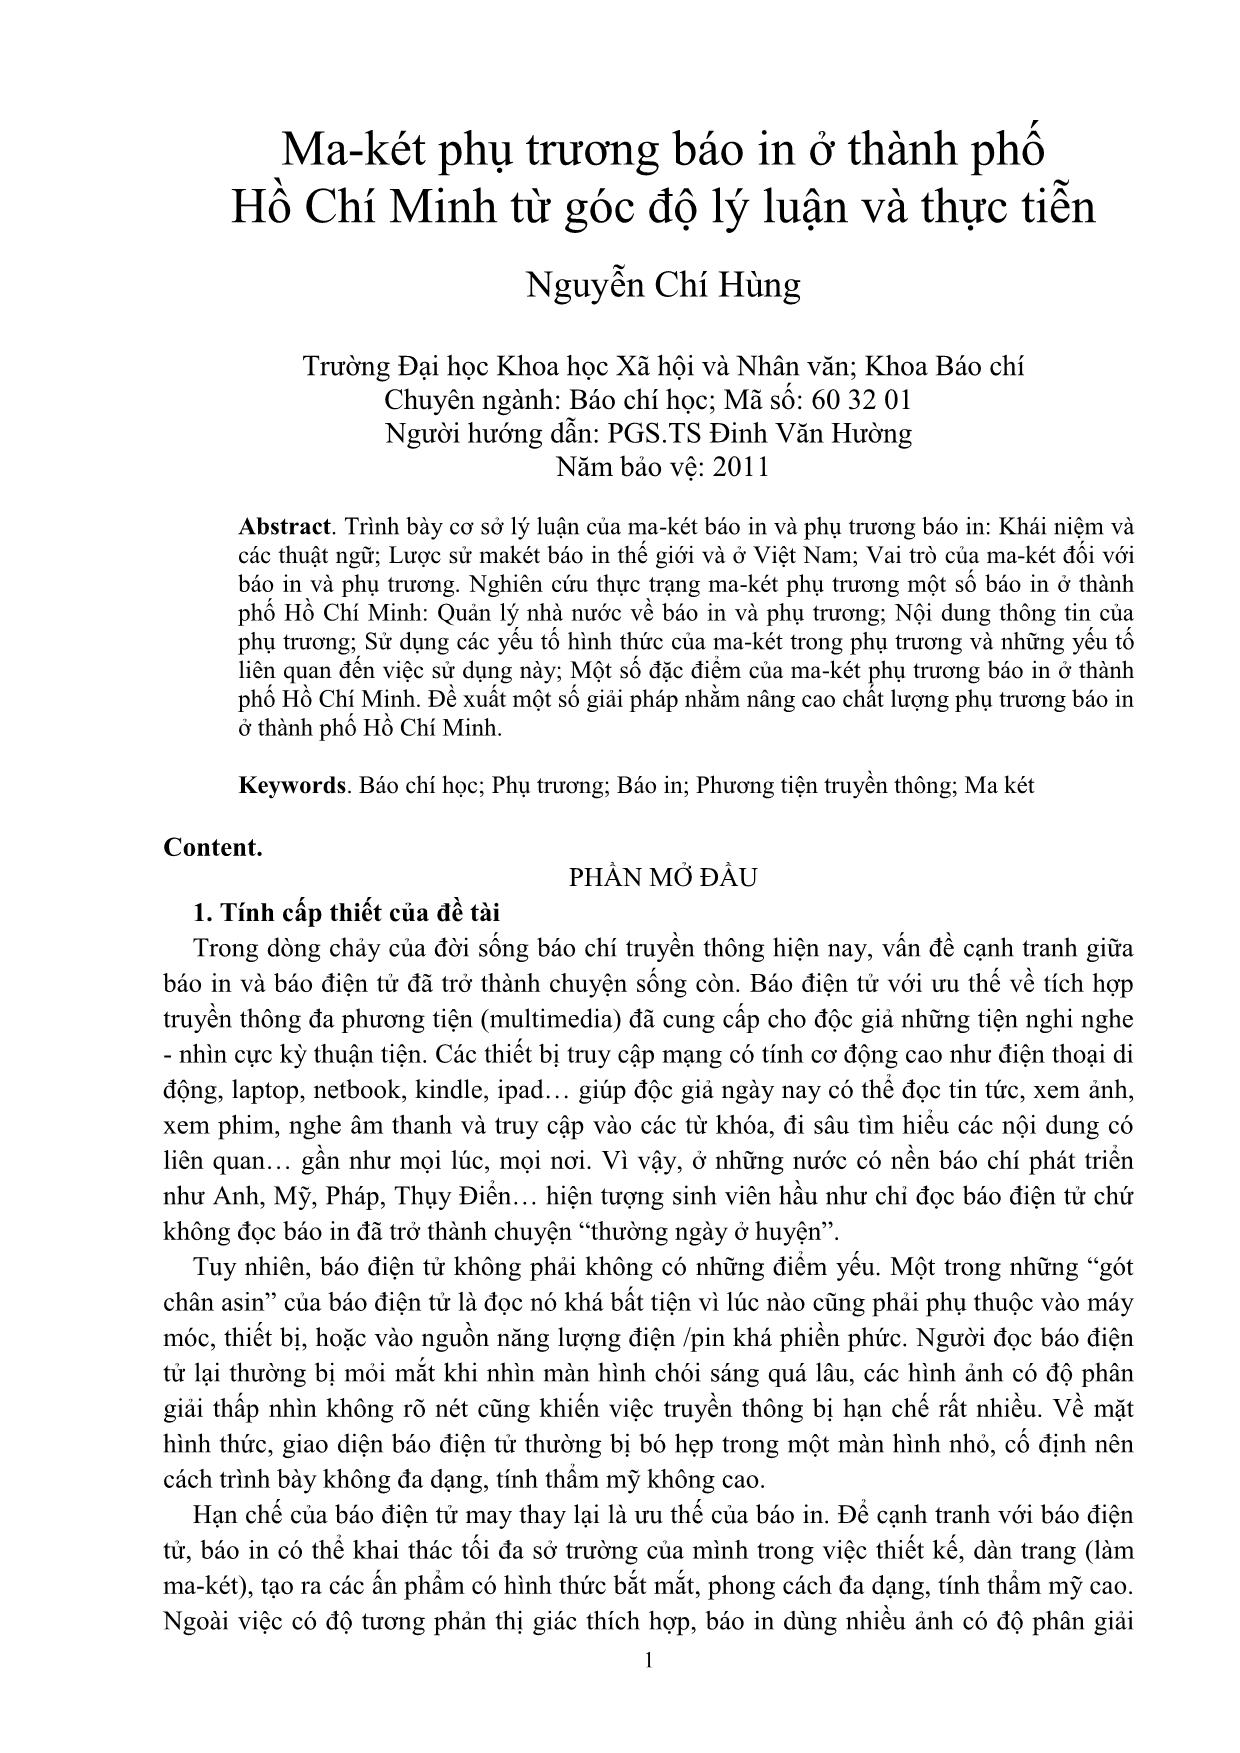 Ma-két phụ trương báo in ở thành phố Hồ Chí Minh từ góc độ lý luận và thực tiễn trang 1